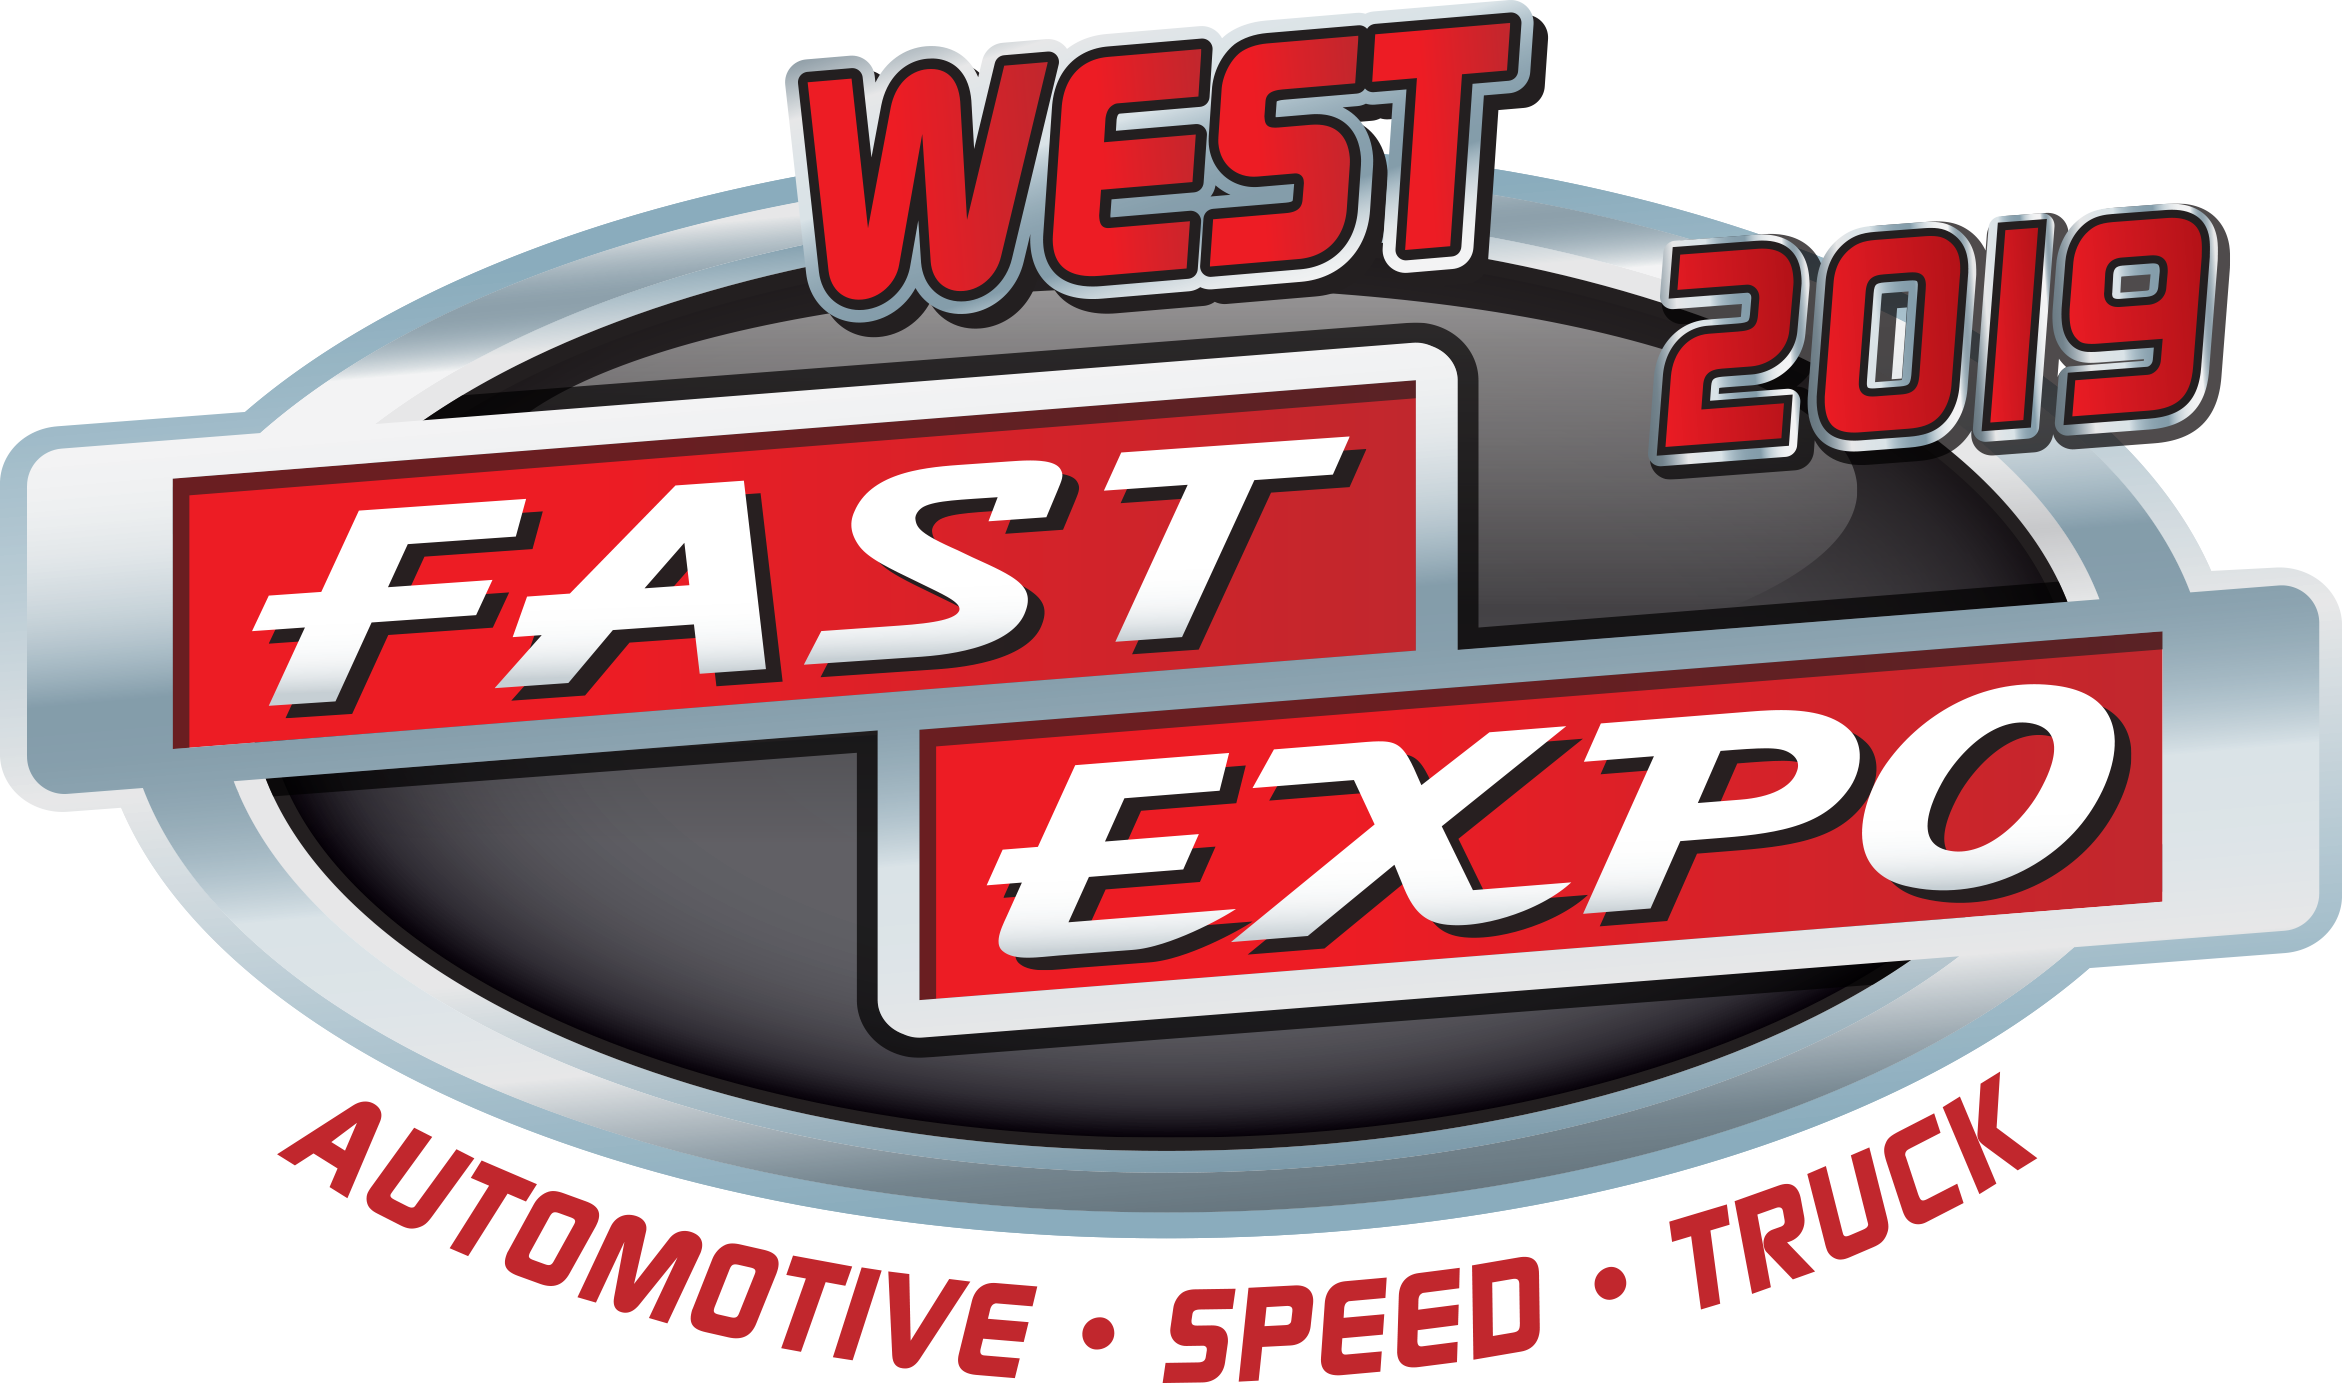 WEST-FASTExpo-2019-logo-no-tread